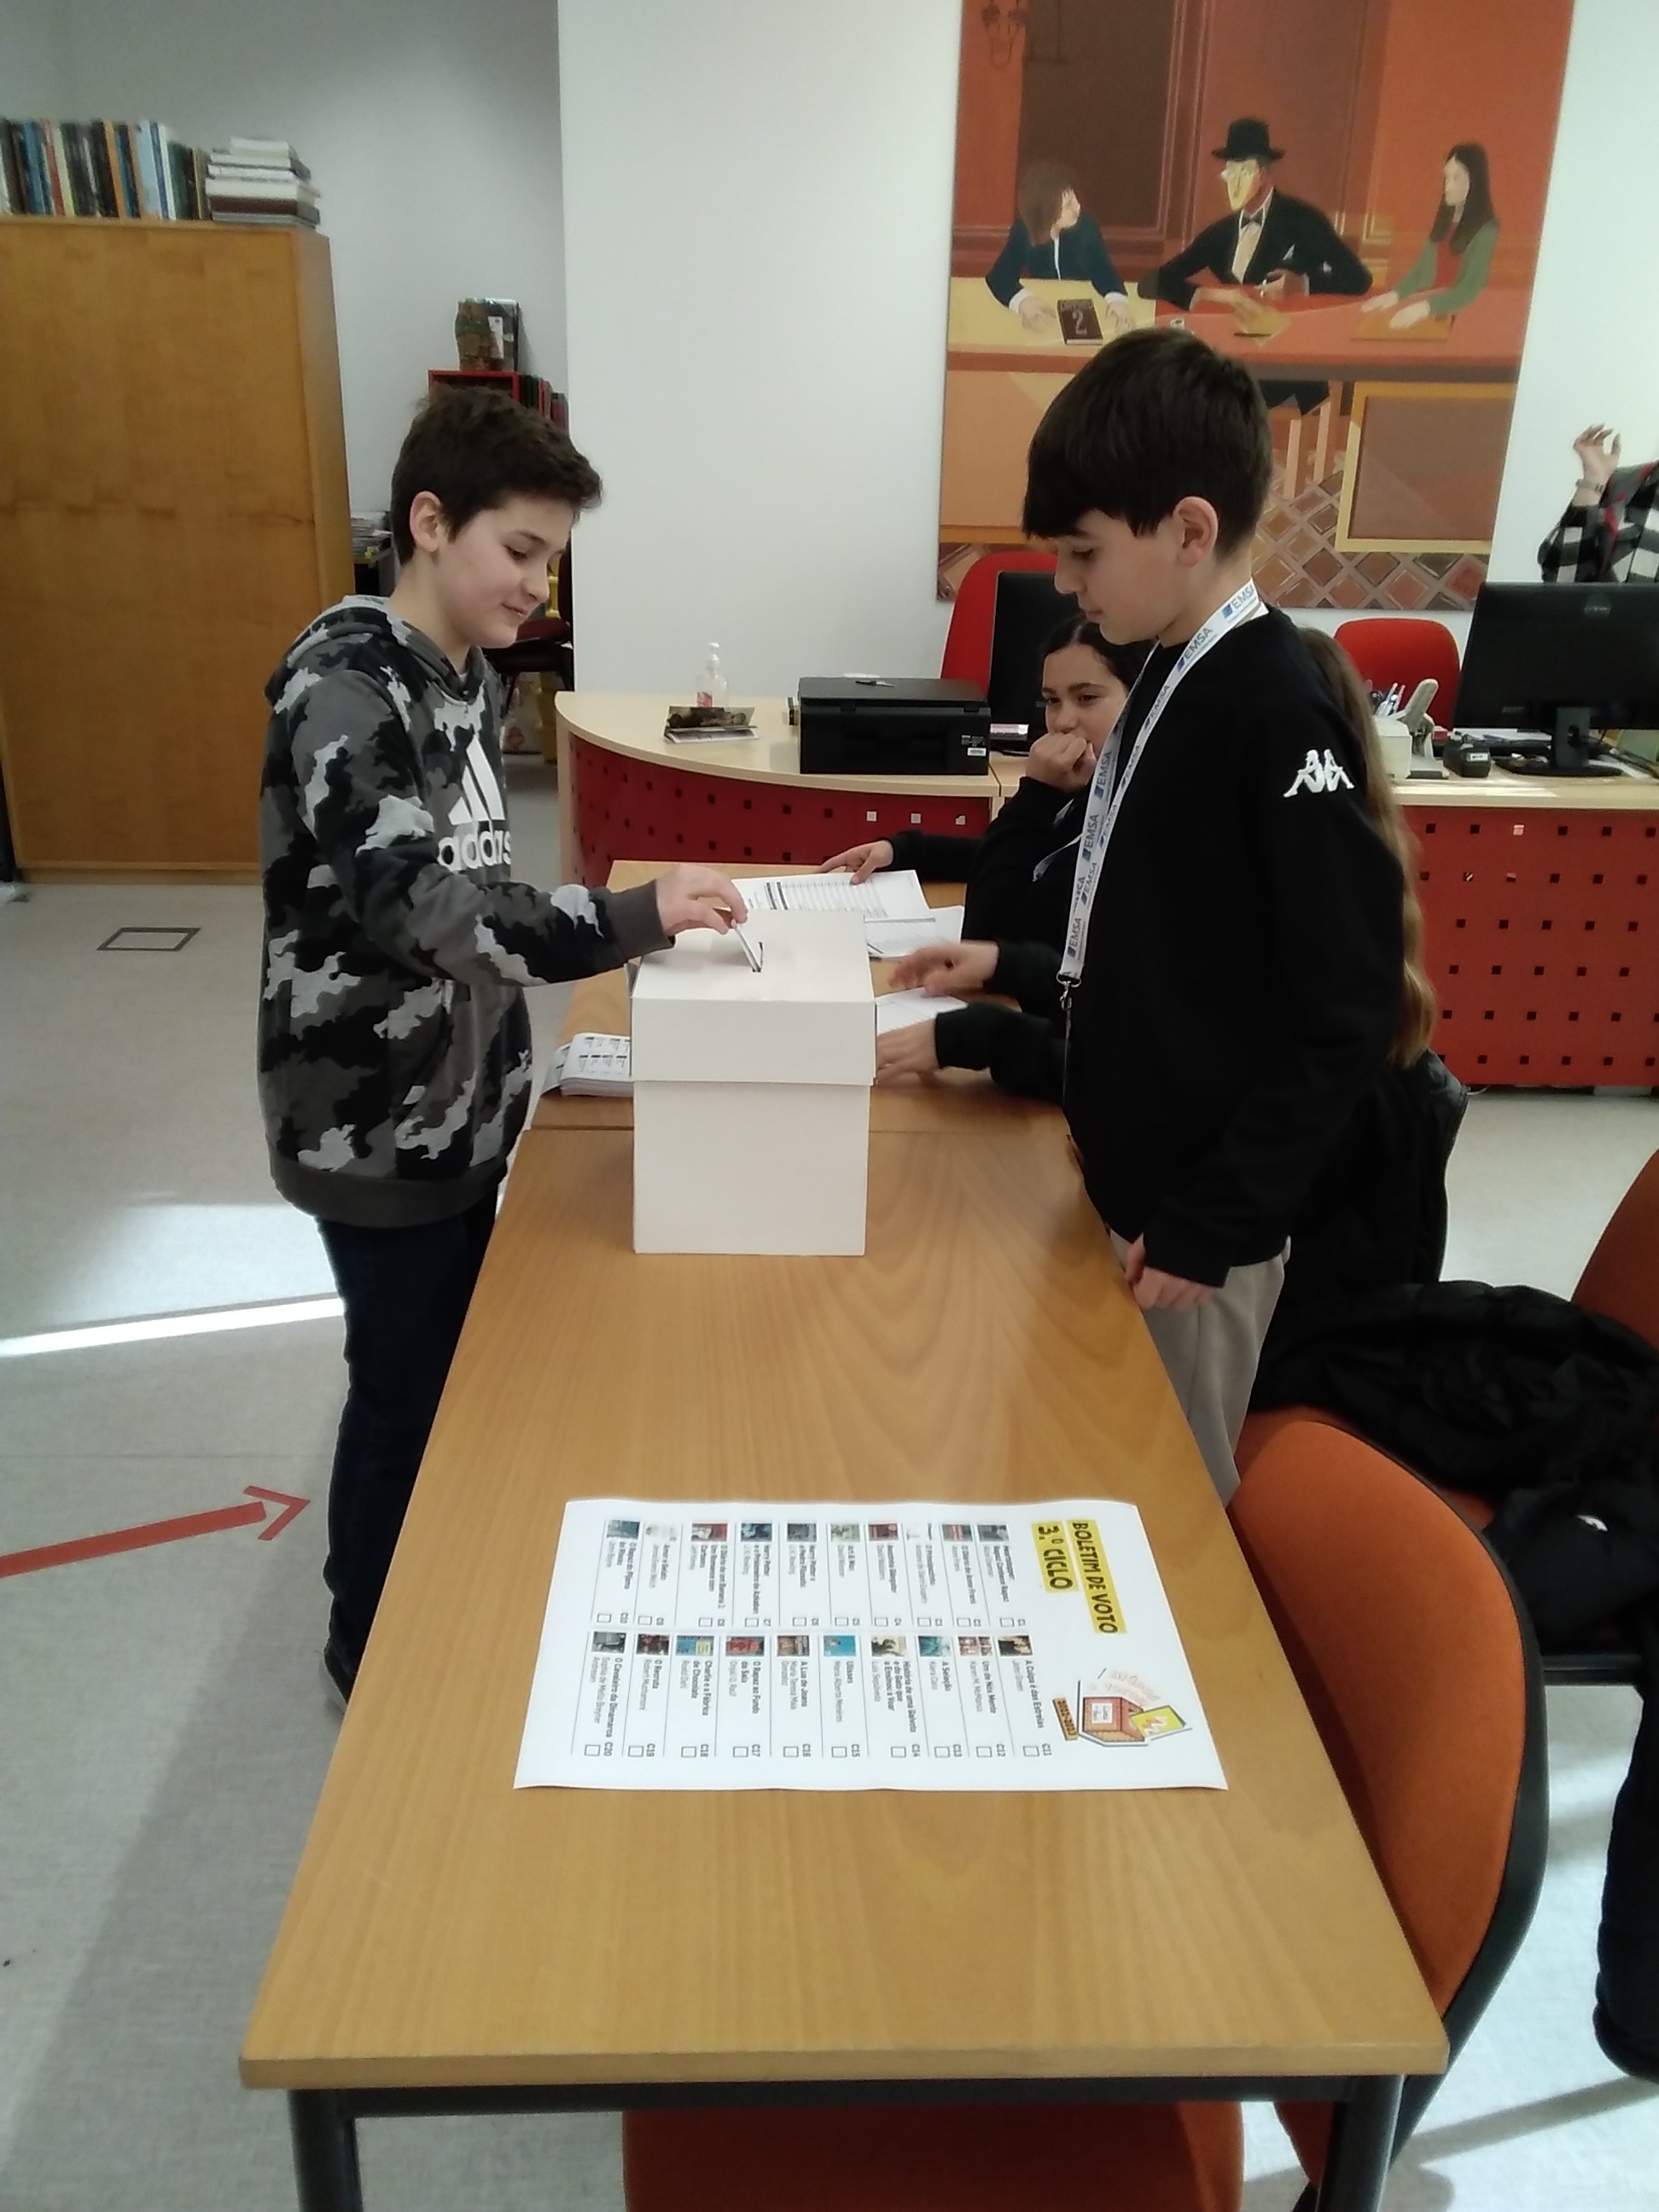 39 Miúdos a votos dia de eleição na Frei